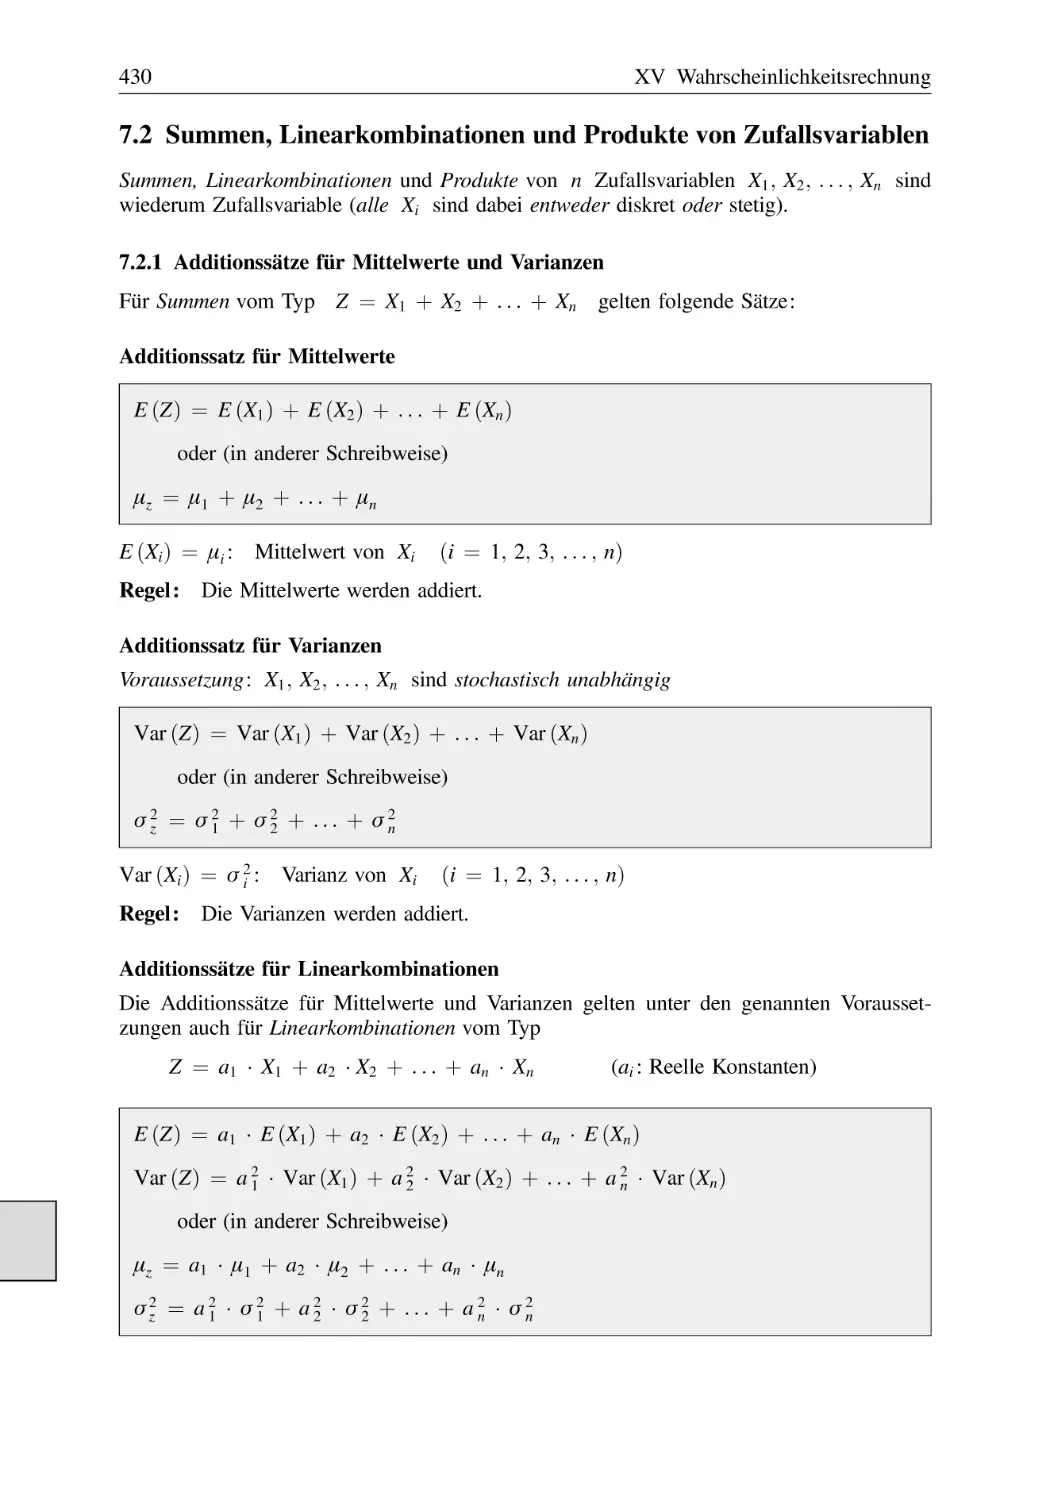 7.2 Summen, Linearkombinationen und Produkte von Zufallsvariablen
7.2.1 Additionssätze für Mittelwerte und Varianzen